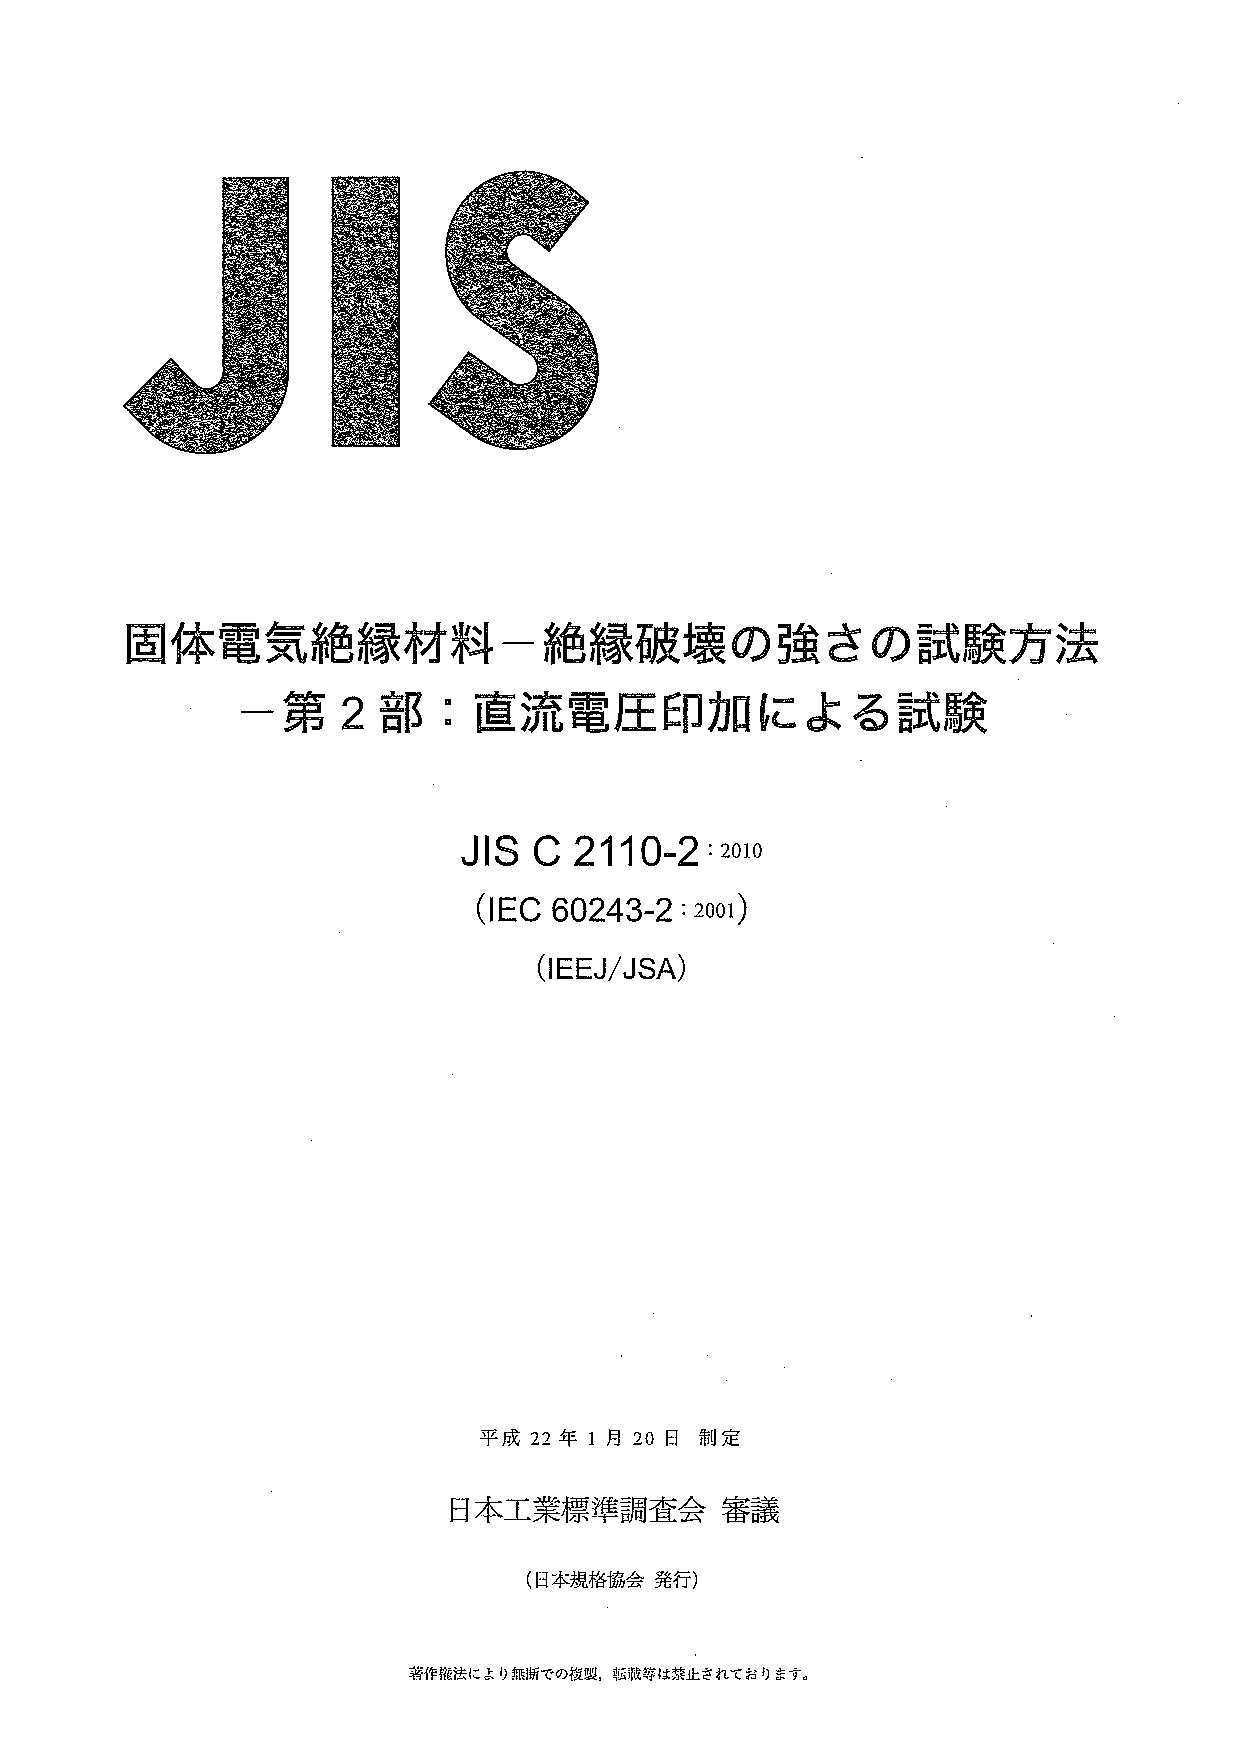 JIS C 2110-2:2010